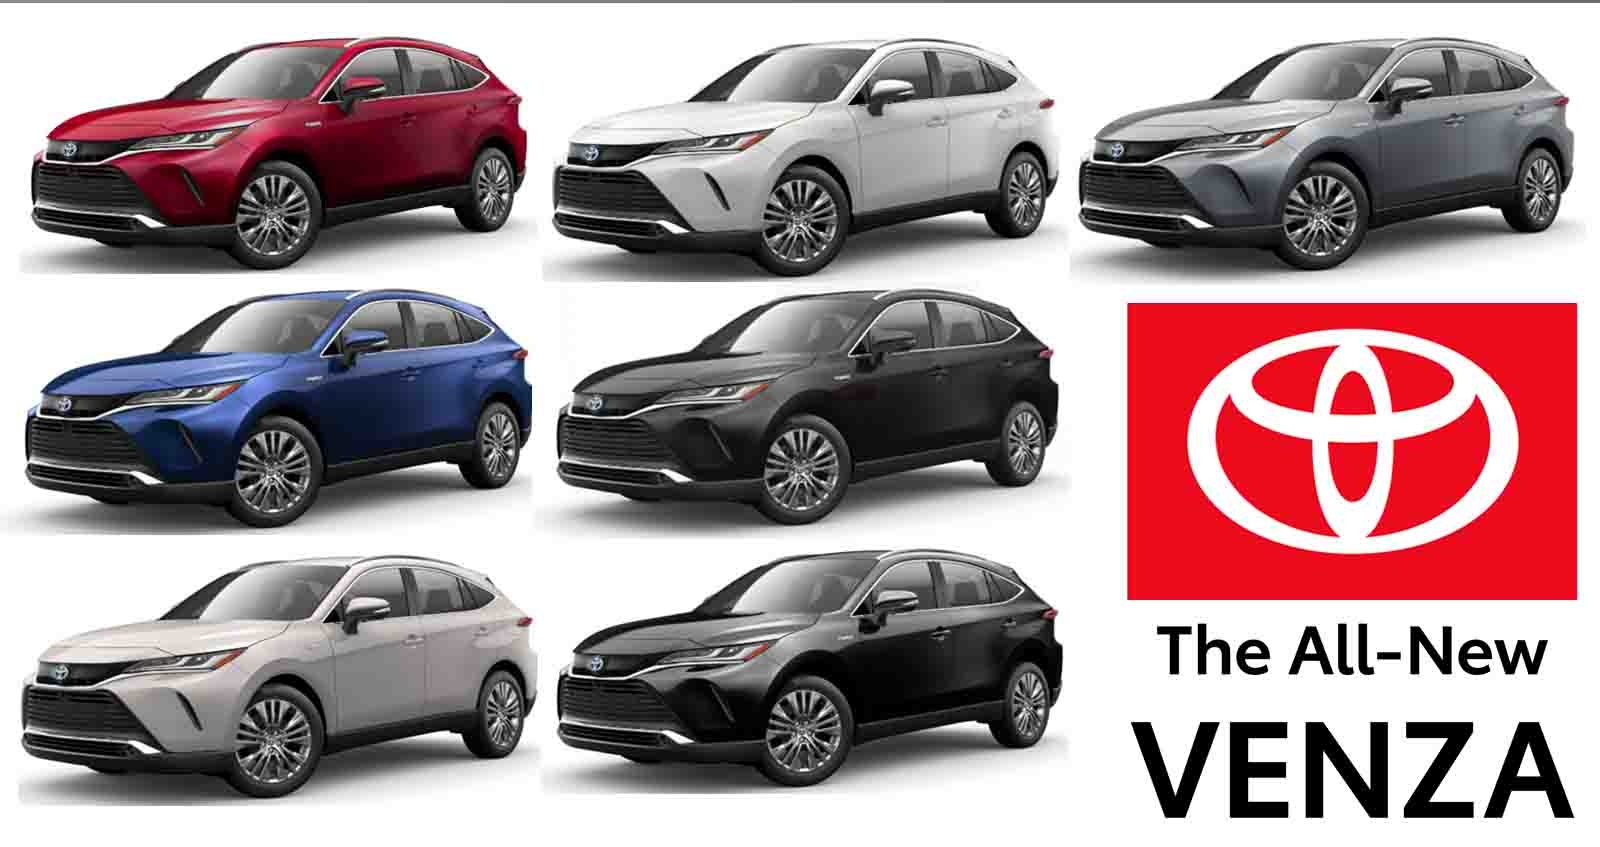 7 สีตัวถัง Toyota Venza ราคา 1.06 ล้านบาท ในสหรัฐฯ